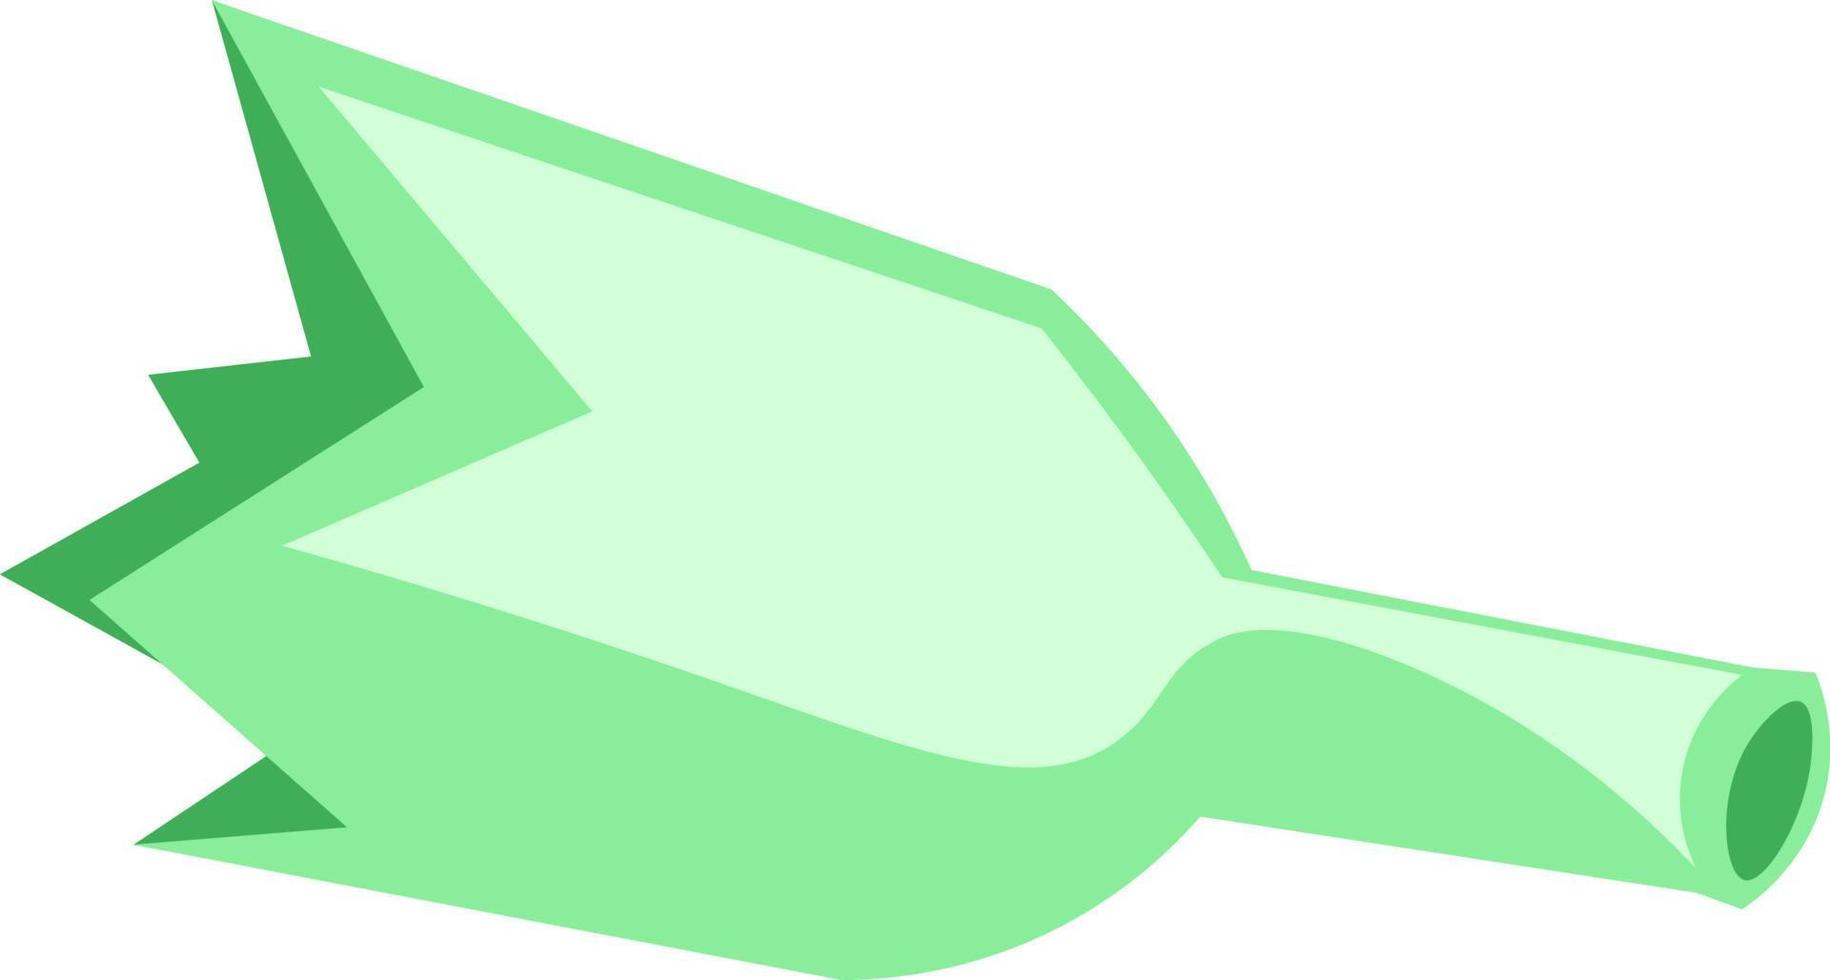 a broken green bottle, vector or color illustration.